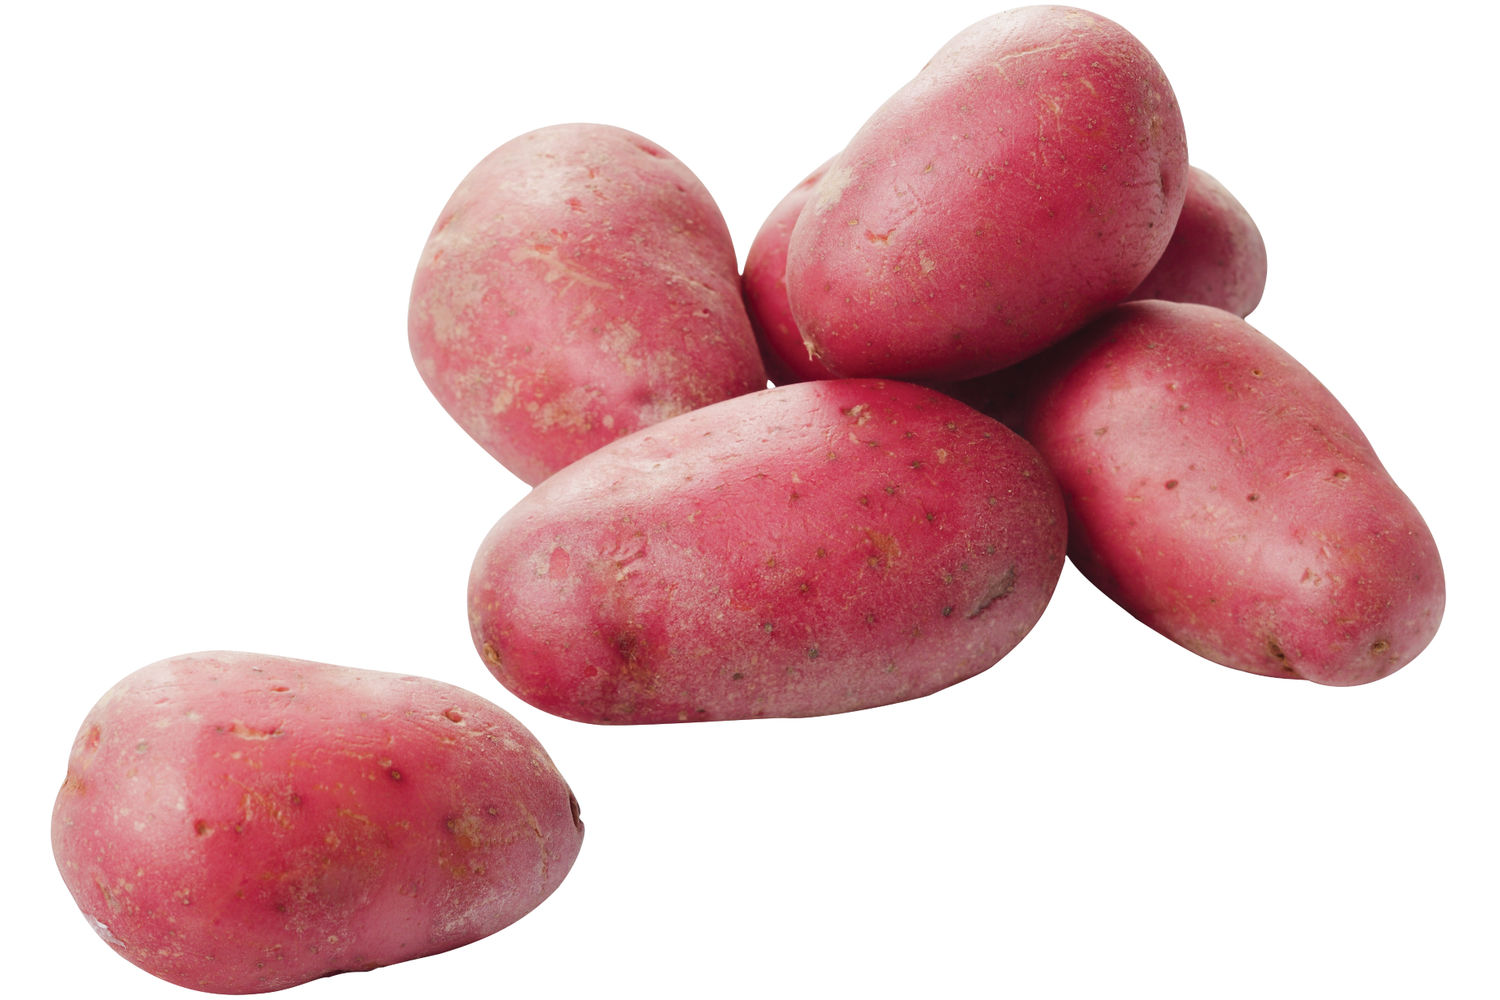 Roseval aardappelen verpakt 2,5kg kist 8 stuks 1